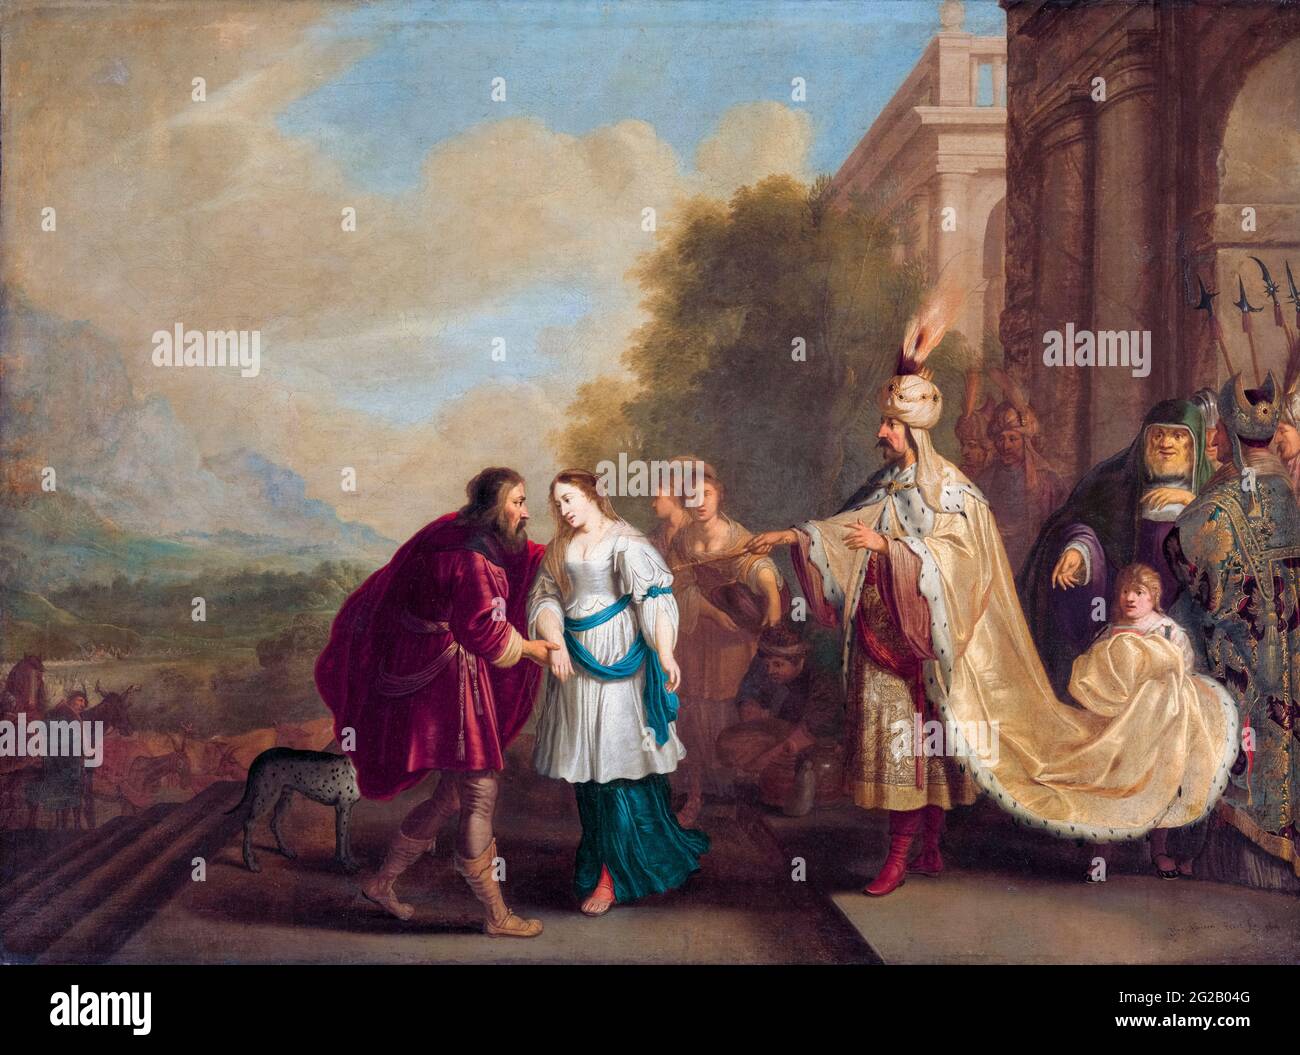 Faraón le da a Sara de vuelta a Abraham, pintura de Isaac Isaacsz, 1640 años Foto de stock